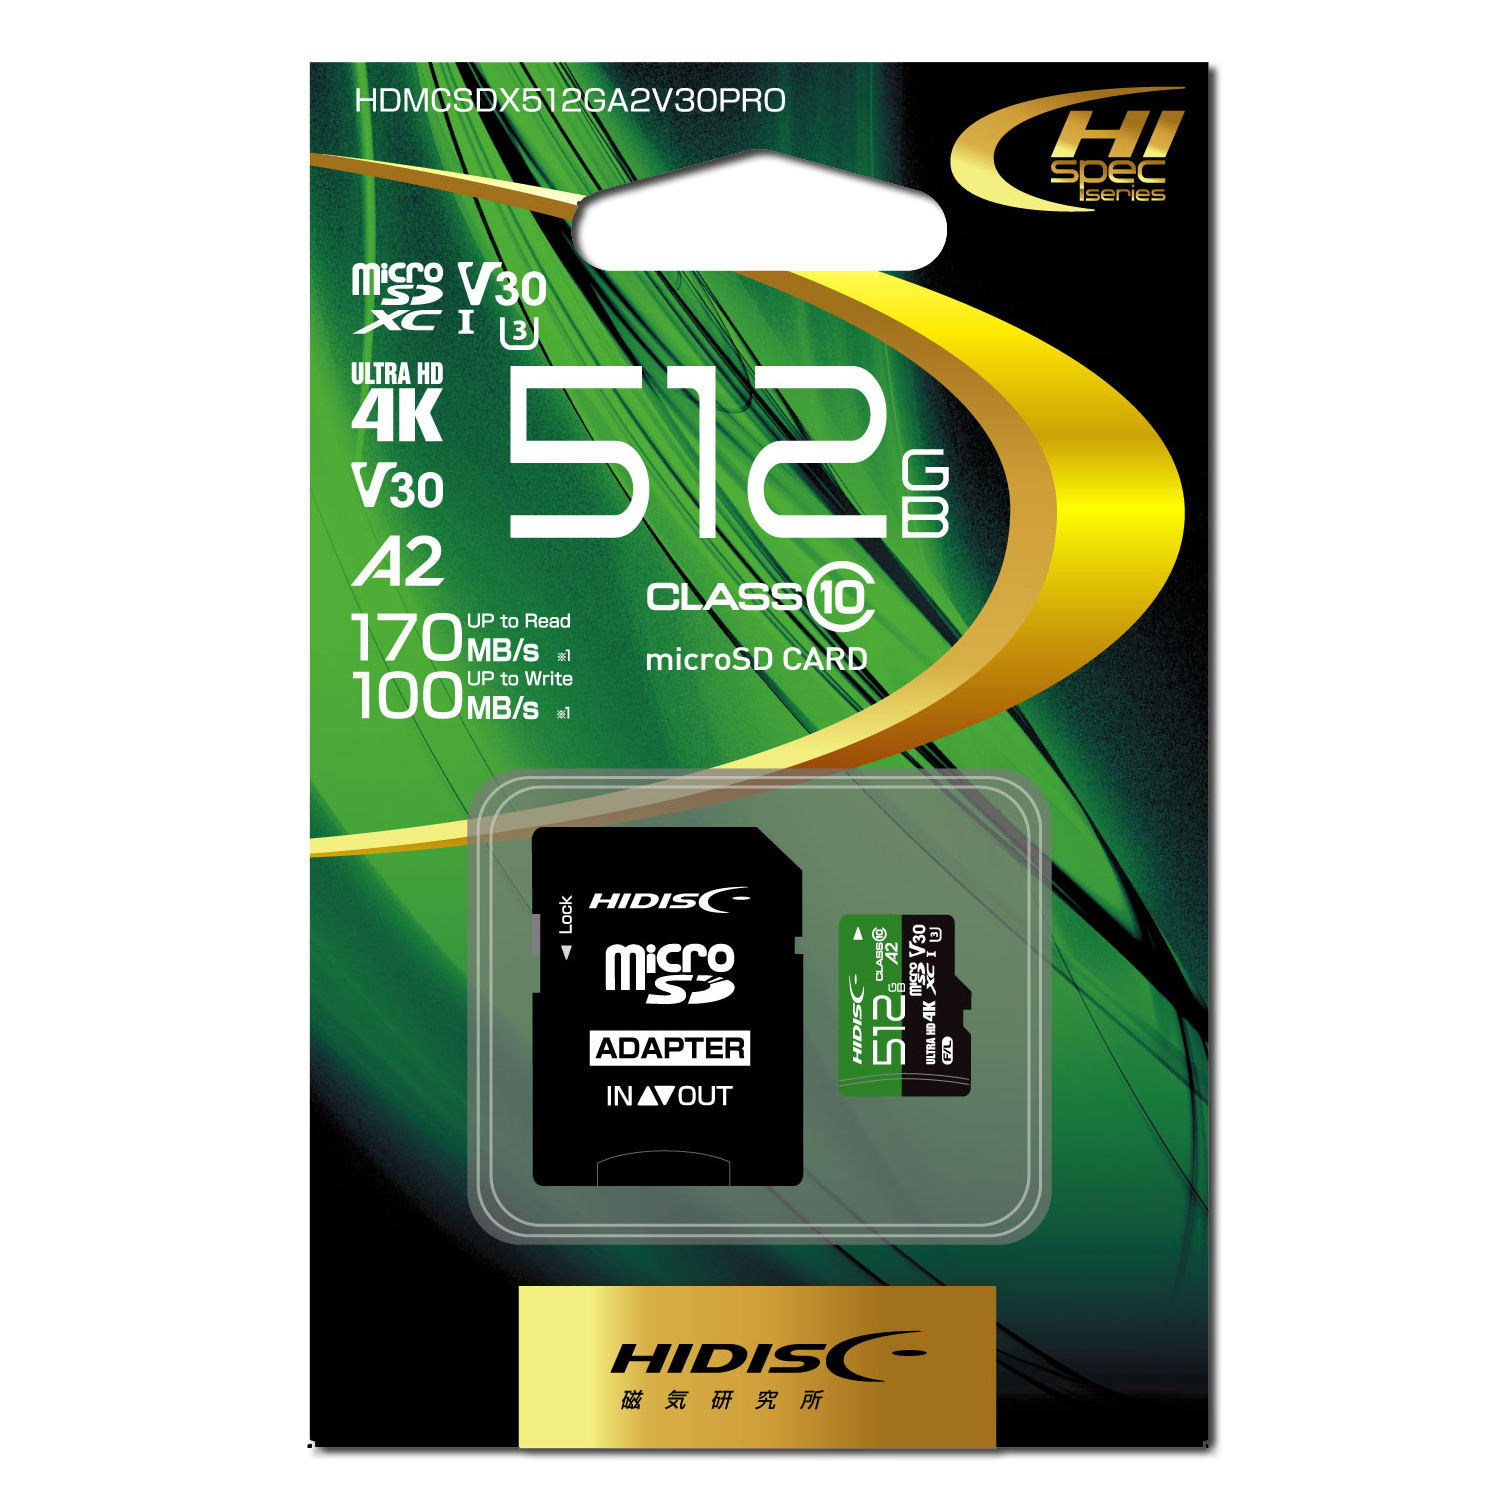 銀に輝く最上位グレード機/4コアi7/メモリ12G/SSD512G/OfficePC/タブレット